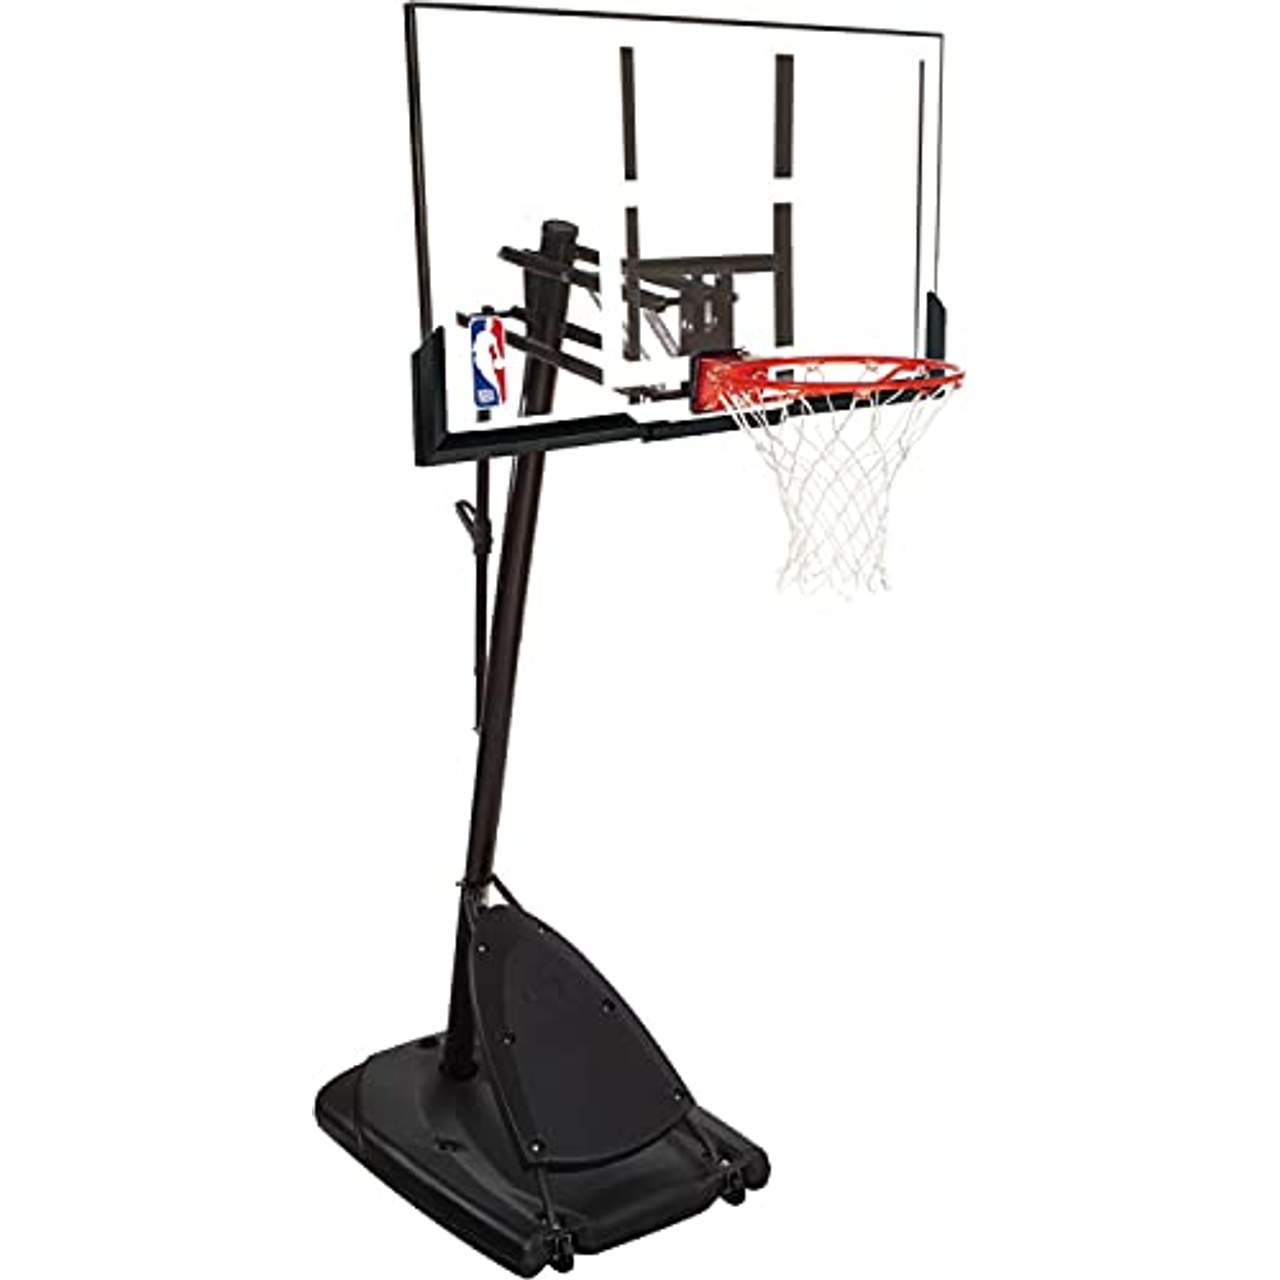 höhenverstellbar 138-250 cm Basketball Korb mobil Basketballständer fahrbar 